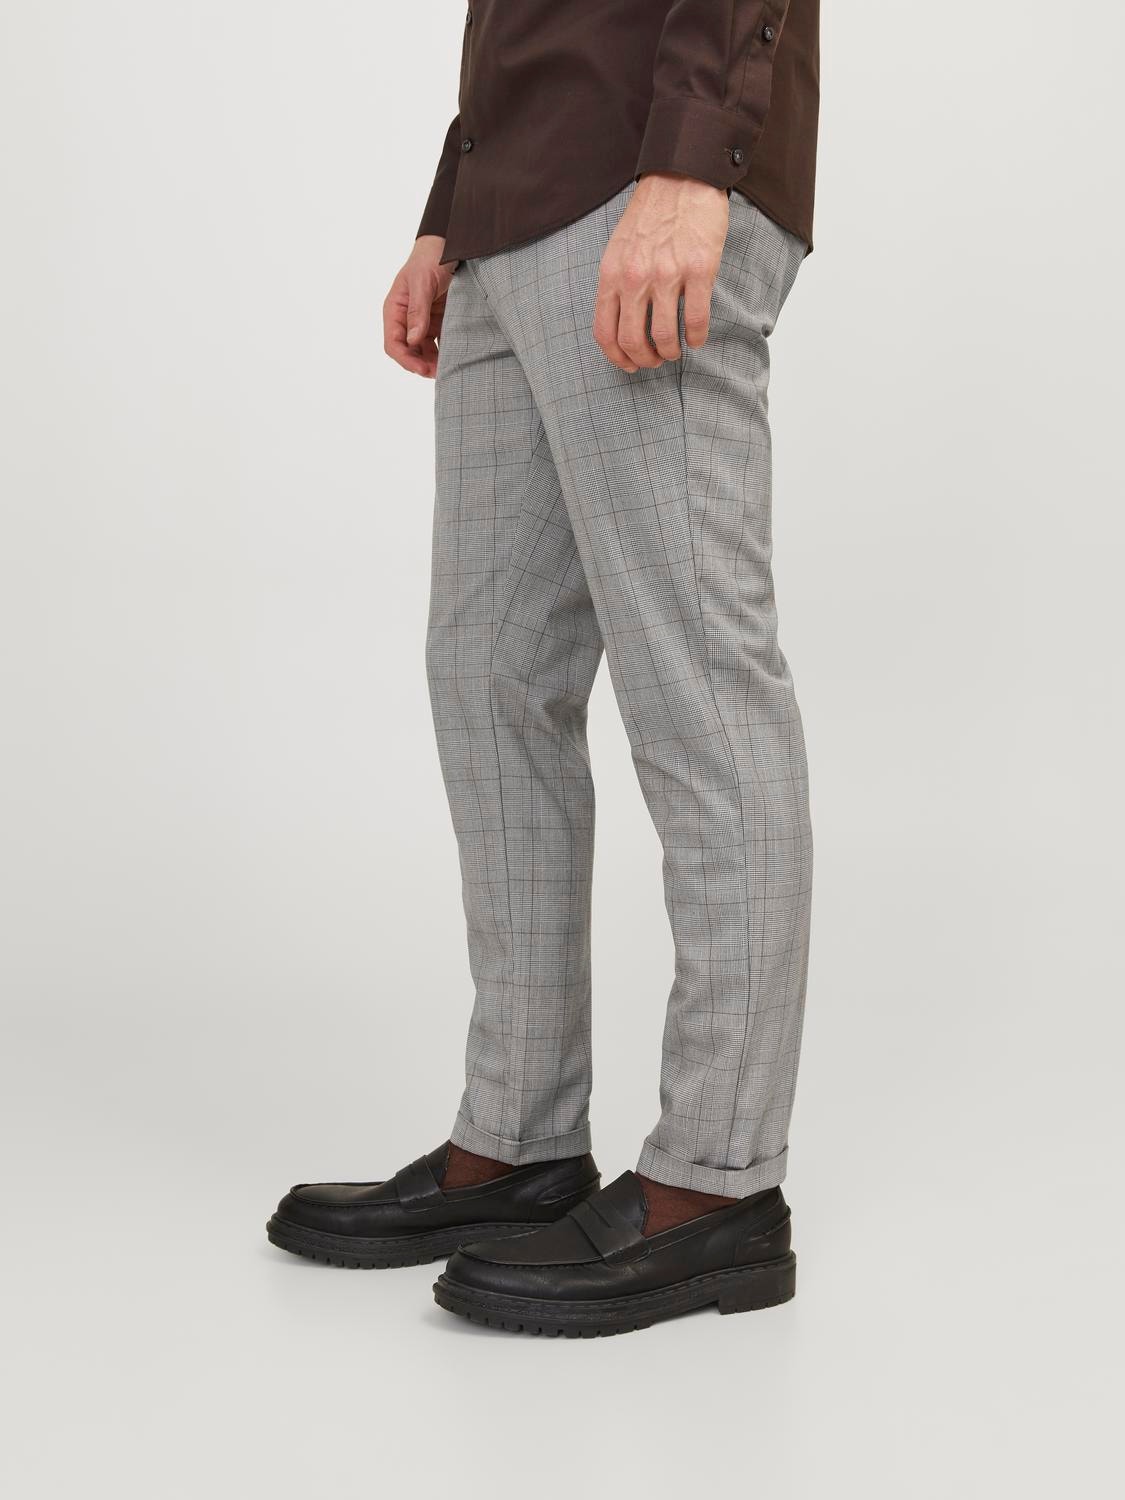 Jack & Jones Slim Fit Plátěné kalhoty Chino -Otter - 12193553